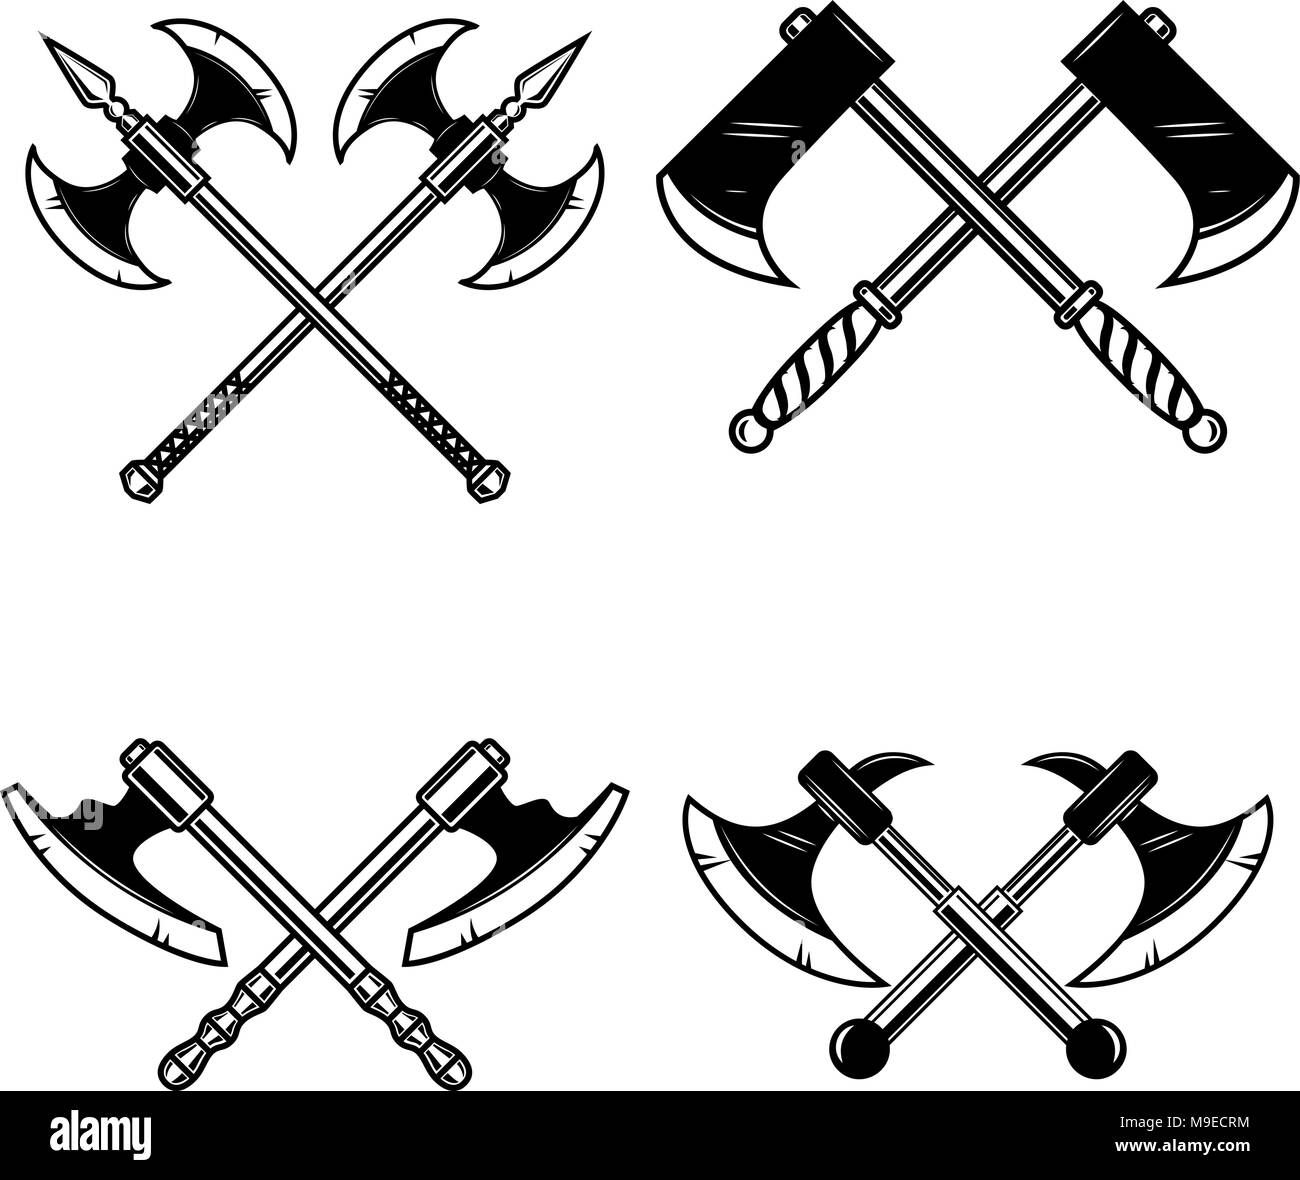 Einstellen der gekreuzten mittelalterlichen ax auf weißem Hintergrund. Design Element für Logo, Label, Emblem, sign. Vector Illustration Stock Vektor